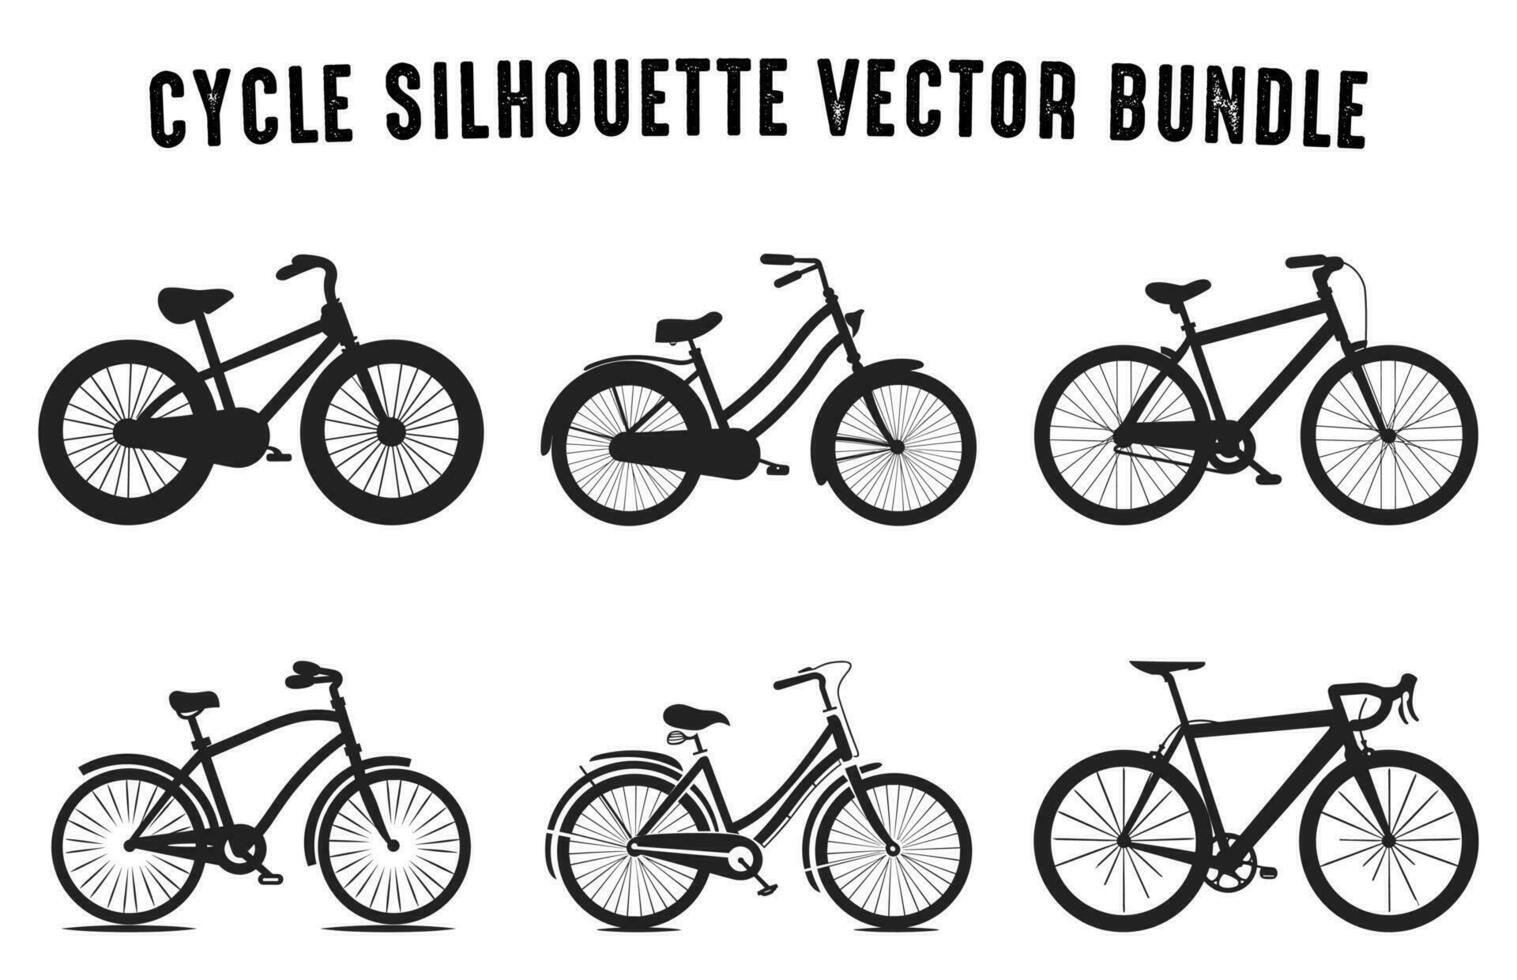 ensemble de vélo silhouettes vecteur illustration, divers type de cycle vecteur collection isolé sur une blanc Contexte